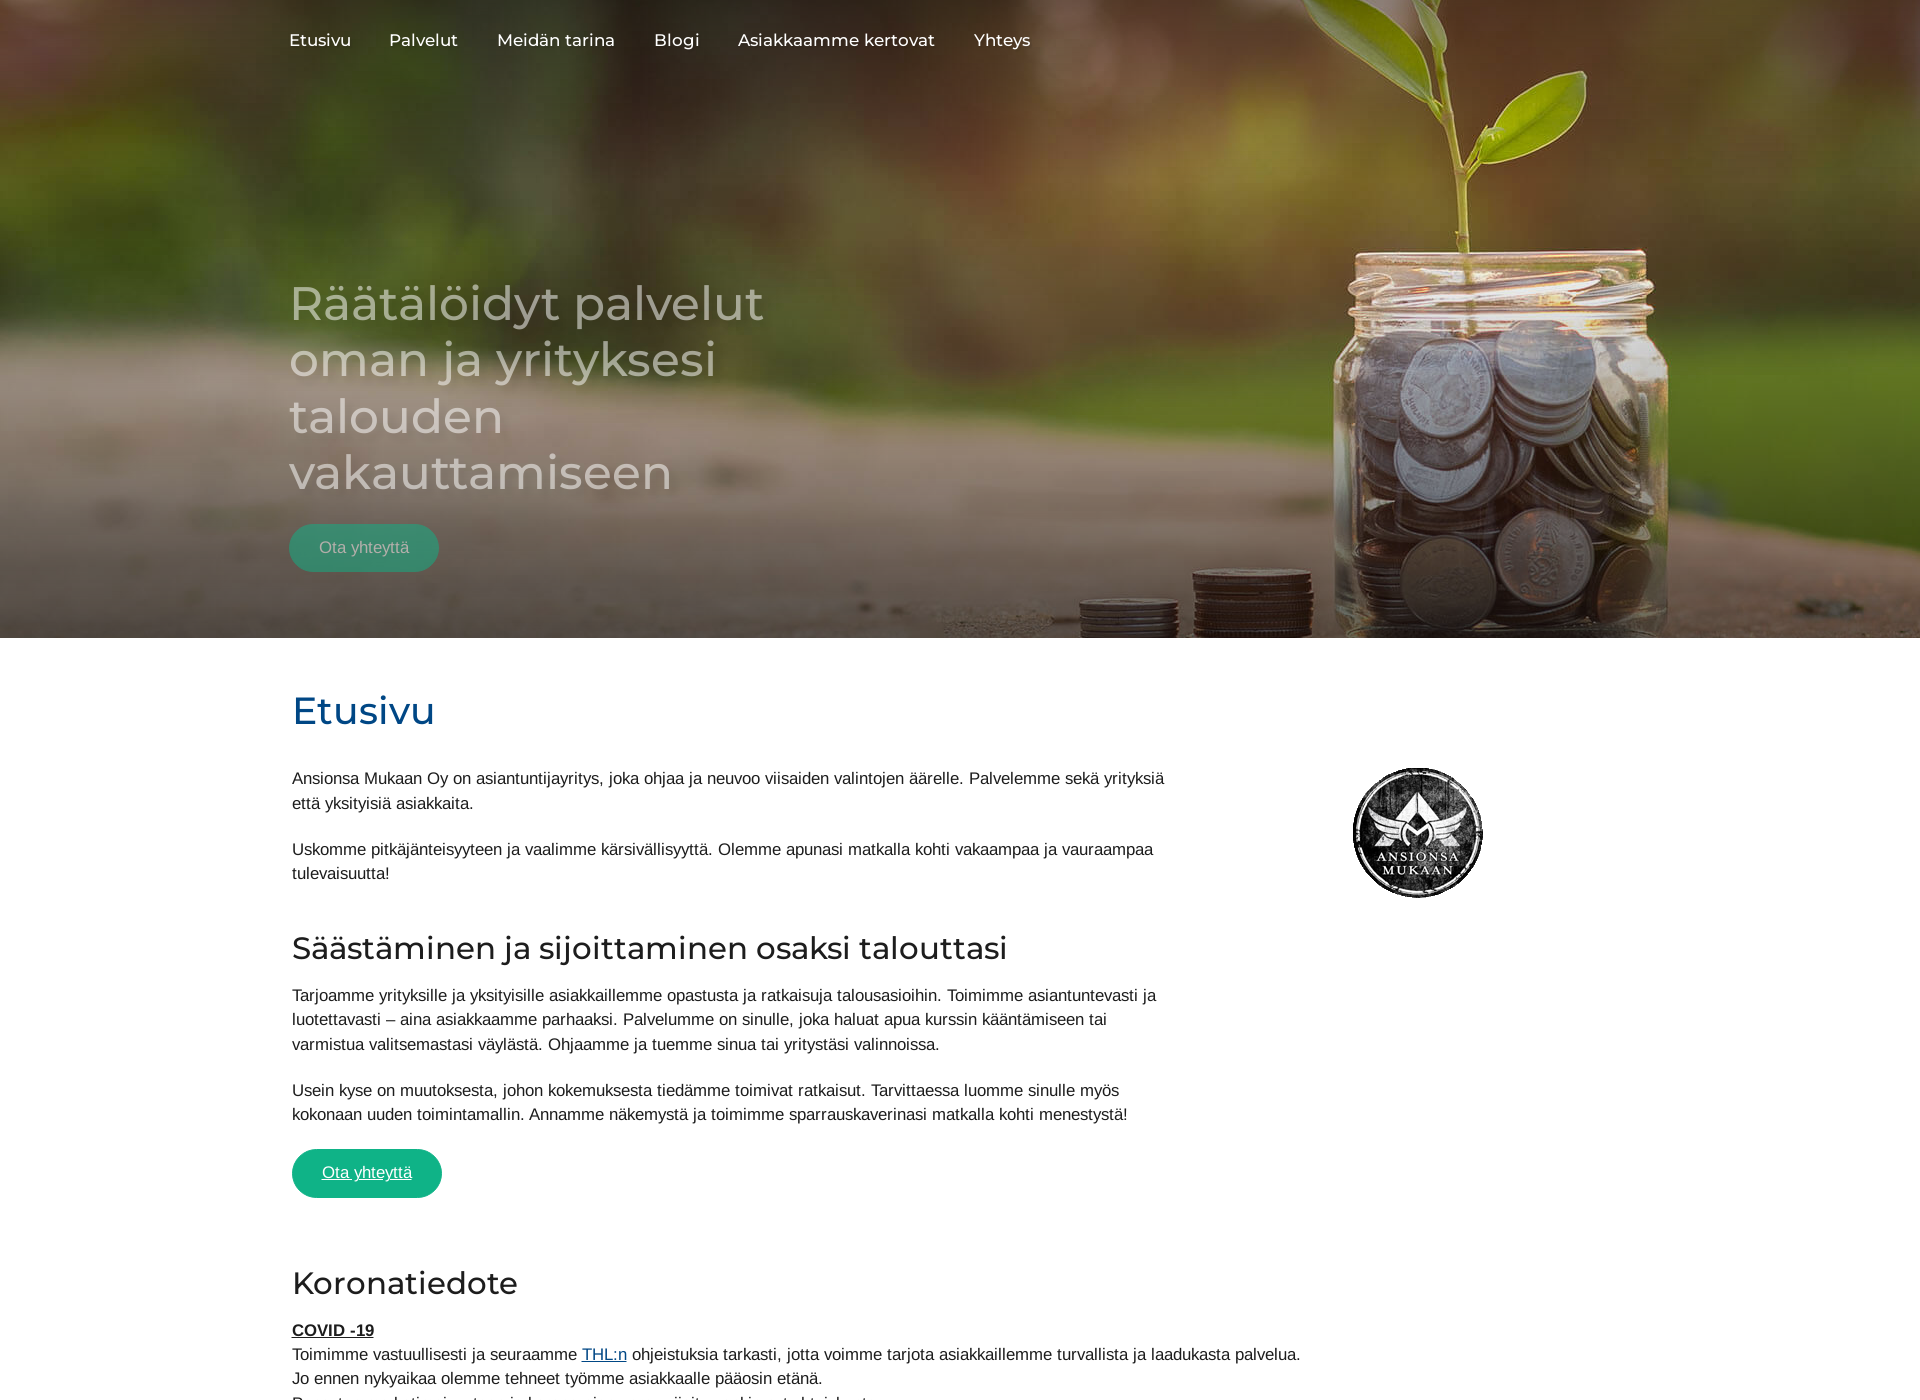 Skärmdump för ansionsamukaan.fi